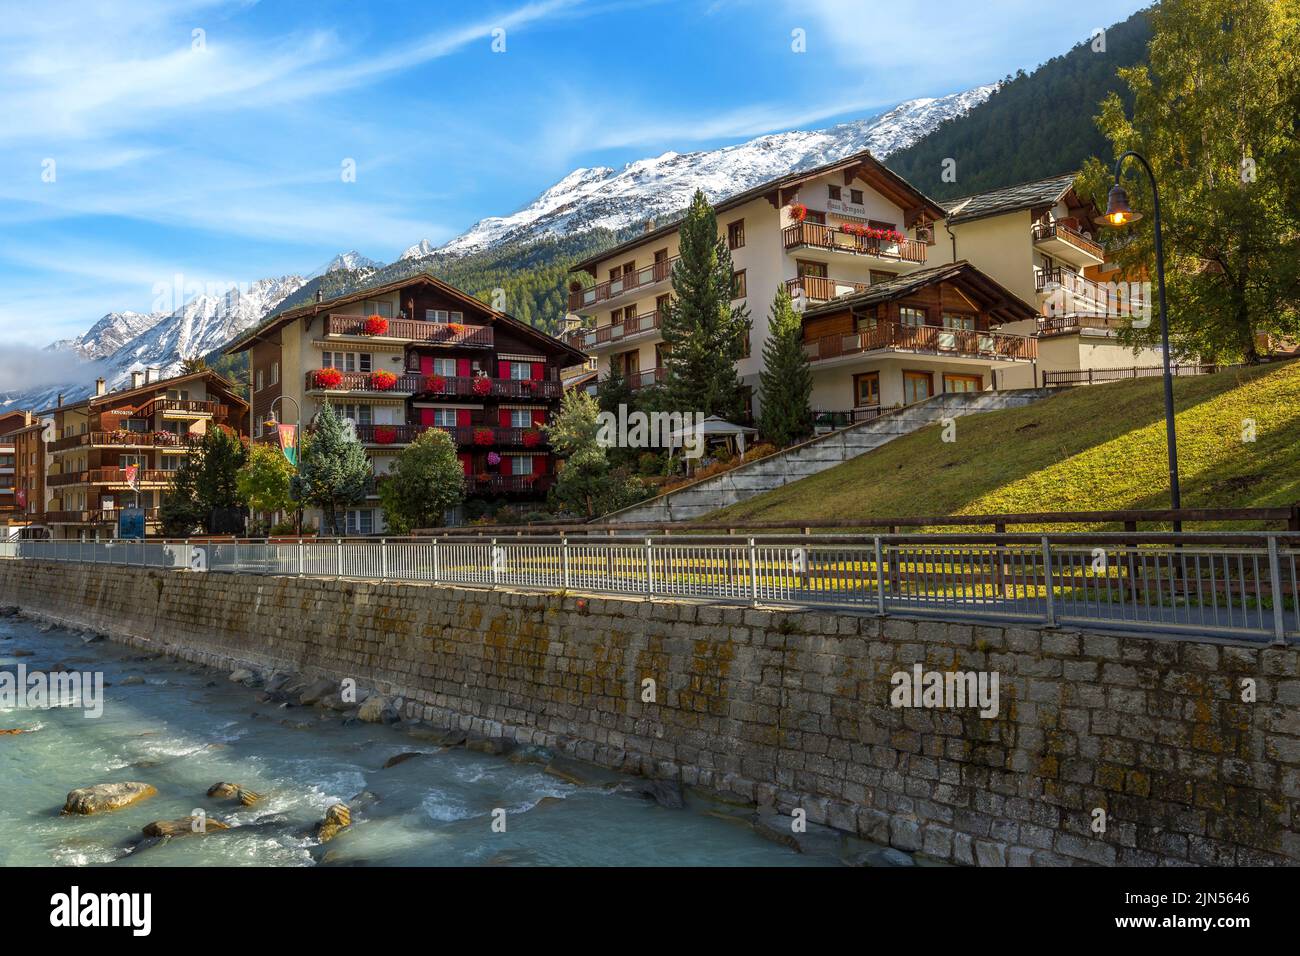 Zermatt, Svizzera - 7 ottobre 2019: Vista sulla strada della città nella famosa stazione sciistica delle Alpi svizzere, fiume, vette innevate Foto Stock